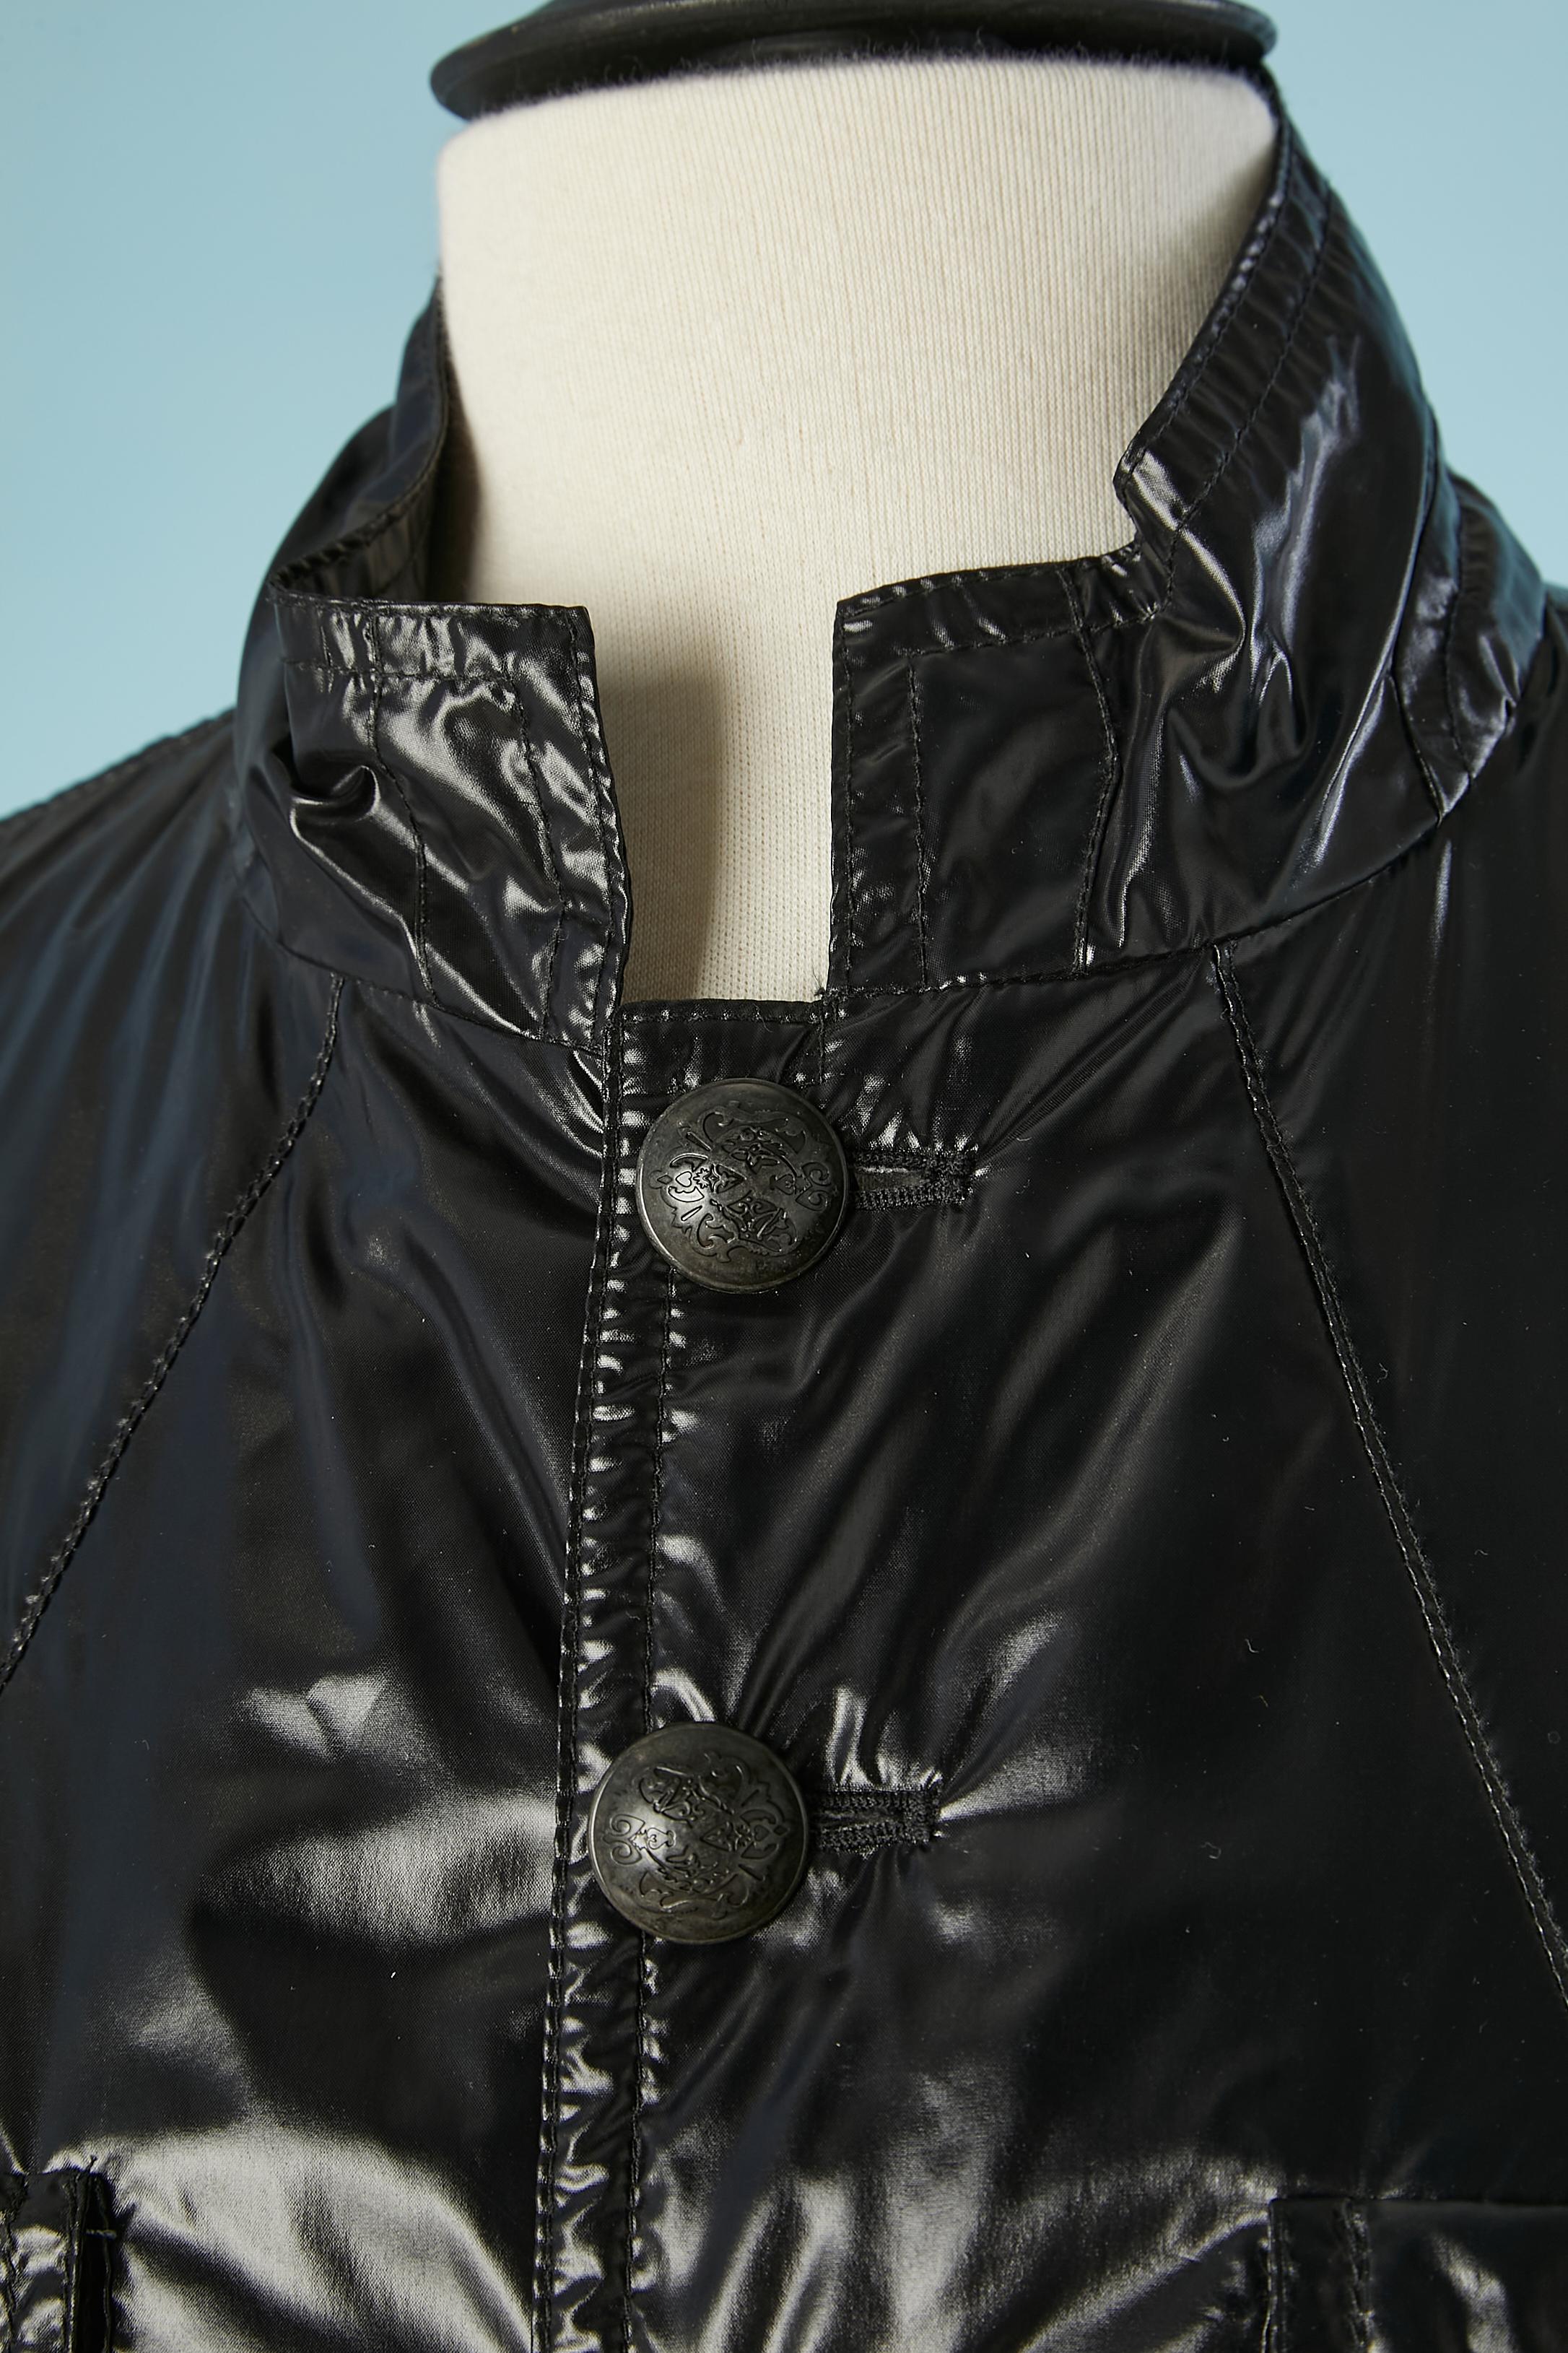 Veste en nylon noir finement paddée avec boutons de marque. Doublure : rayonne
TAILLE 54 (Homme) 